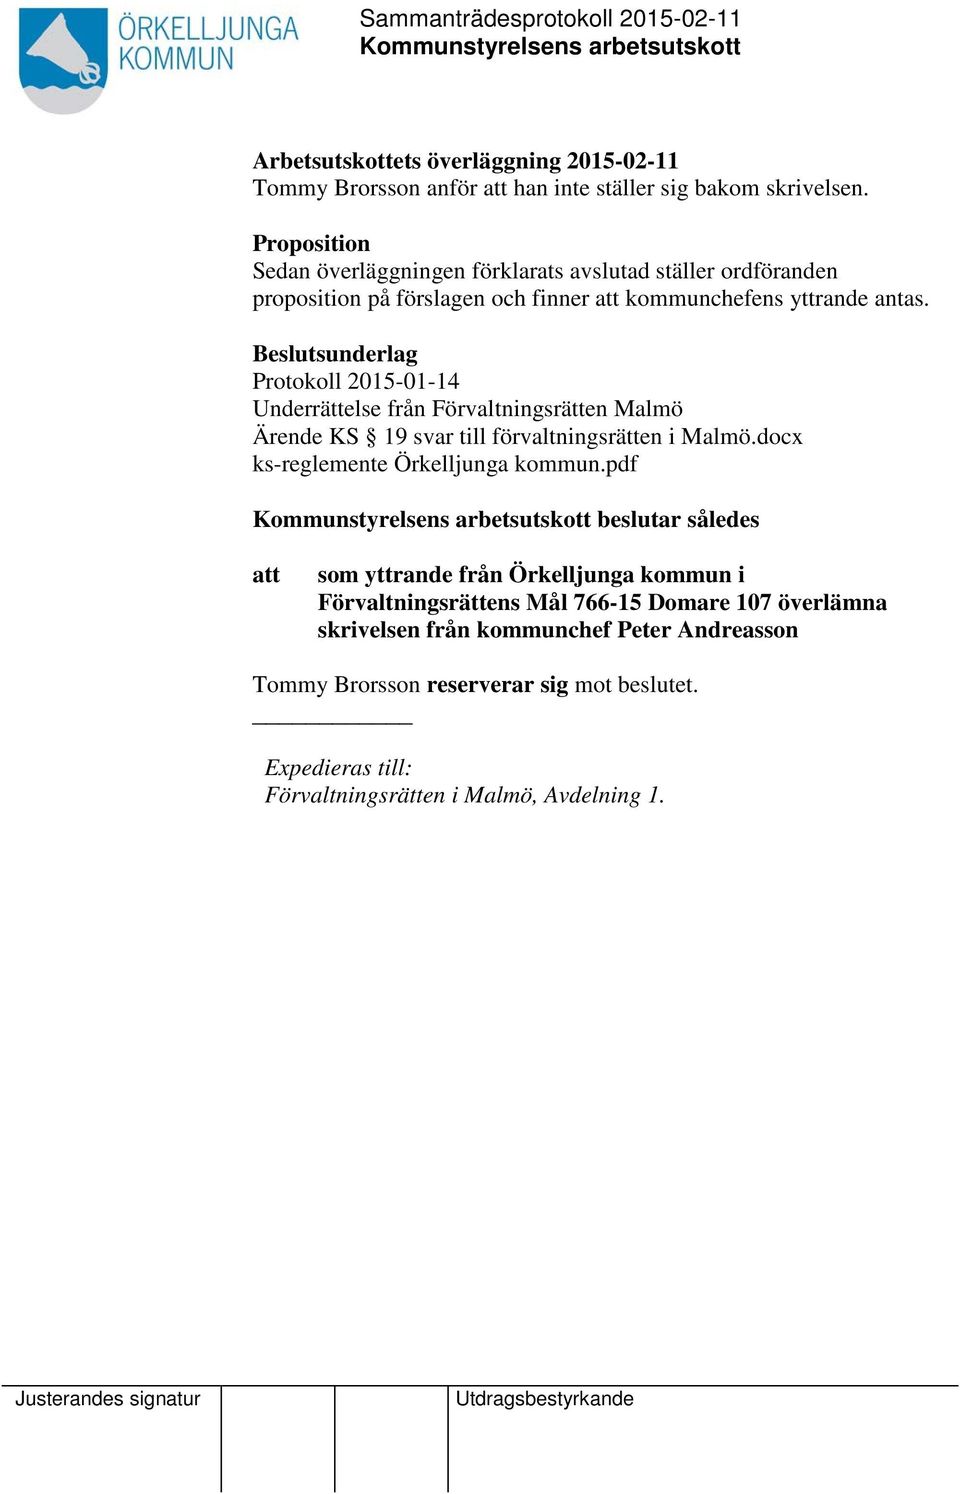 Beslutsunderlag Protokoll 2015-01-14 Underrättelse från Förvaltningsrätten Malmö Ärende KS 19 svar till förvaltningsrätten i Malmö.docx ks-reglemente Örkelljunga kommun.